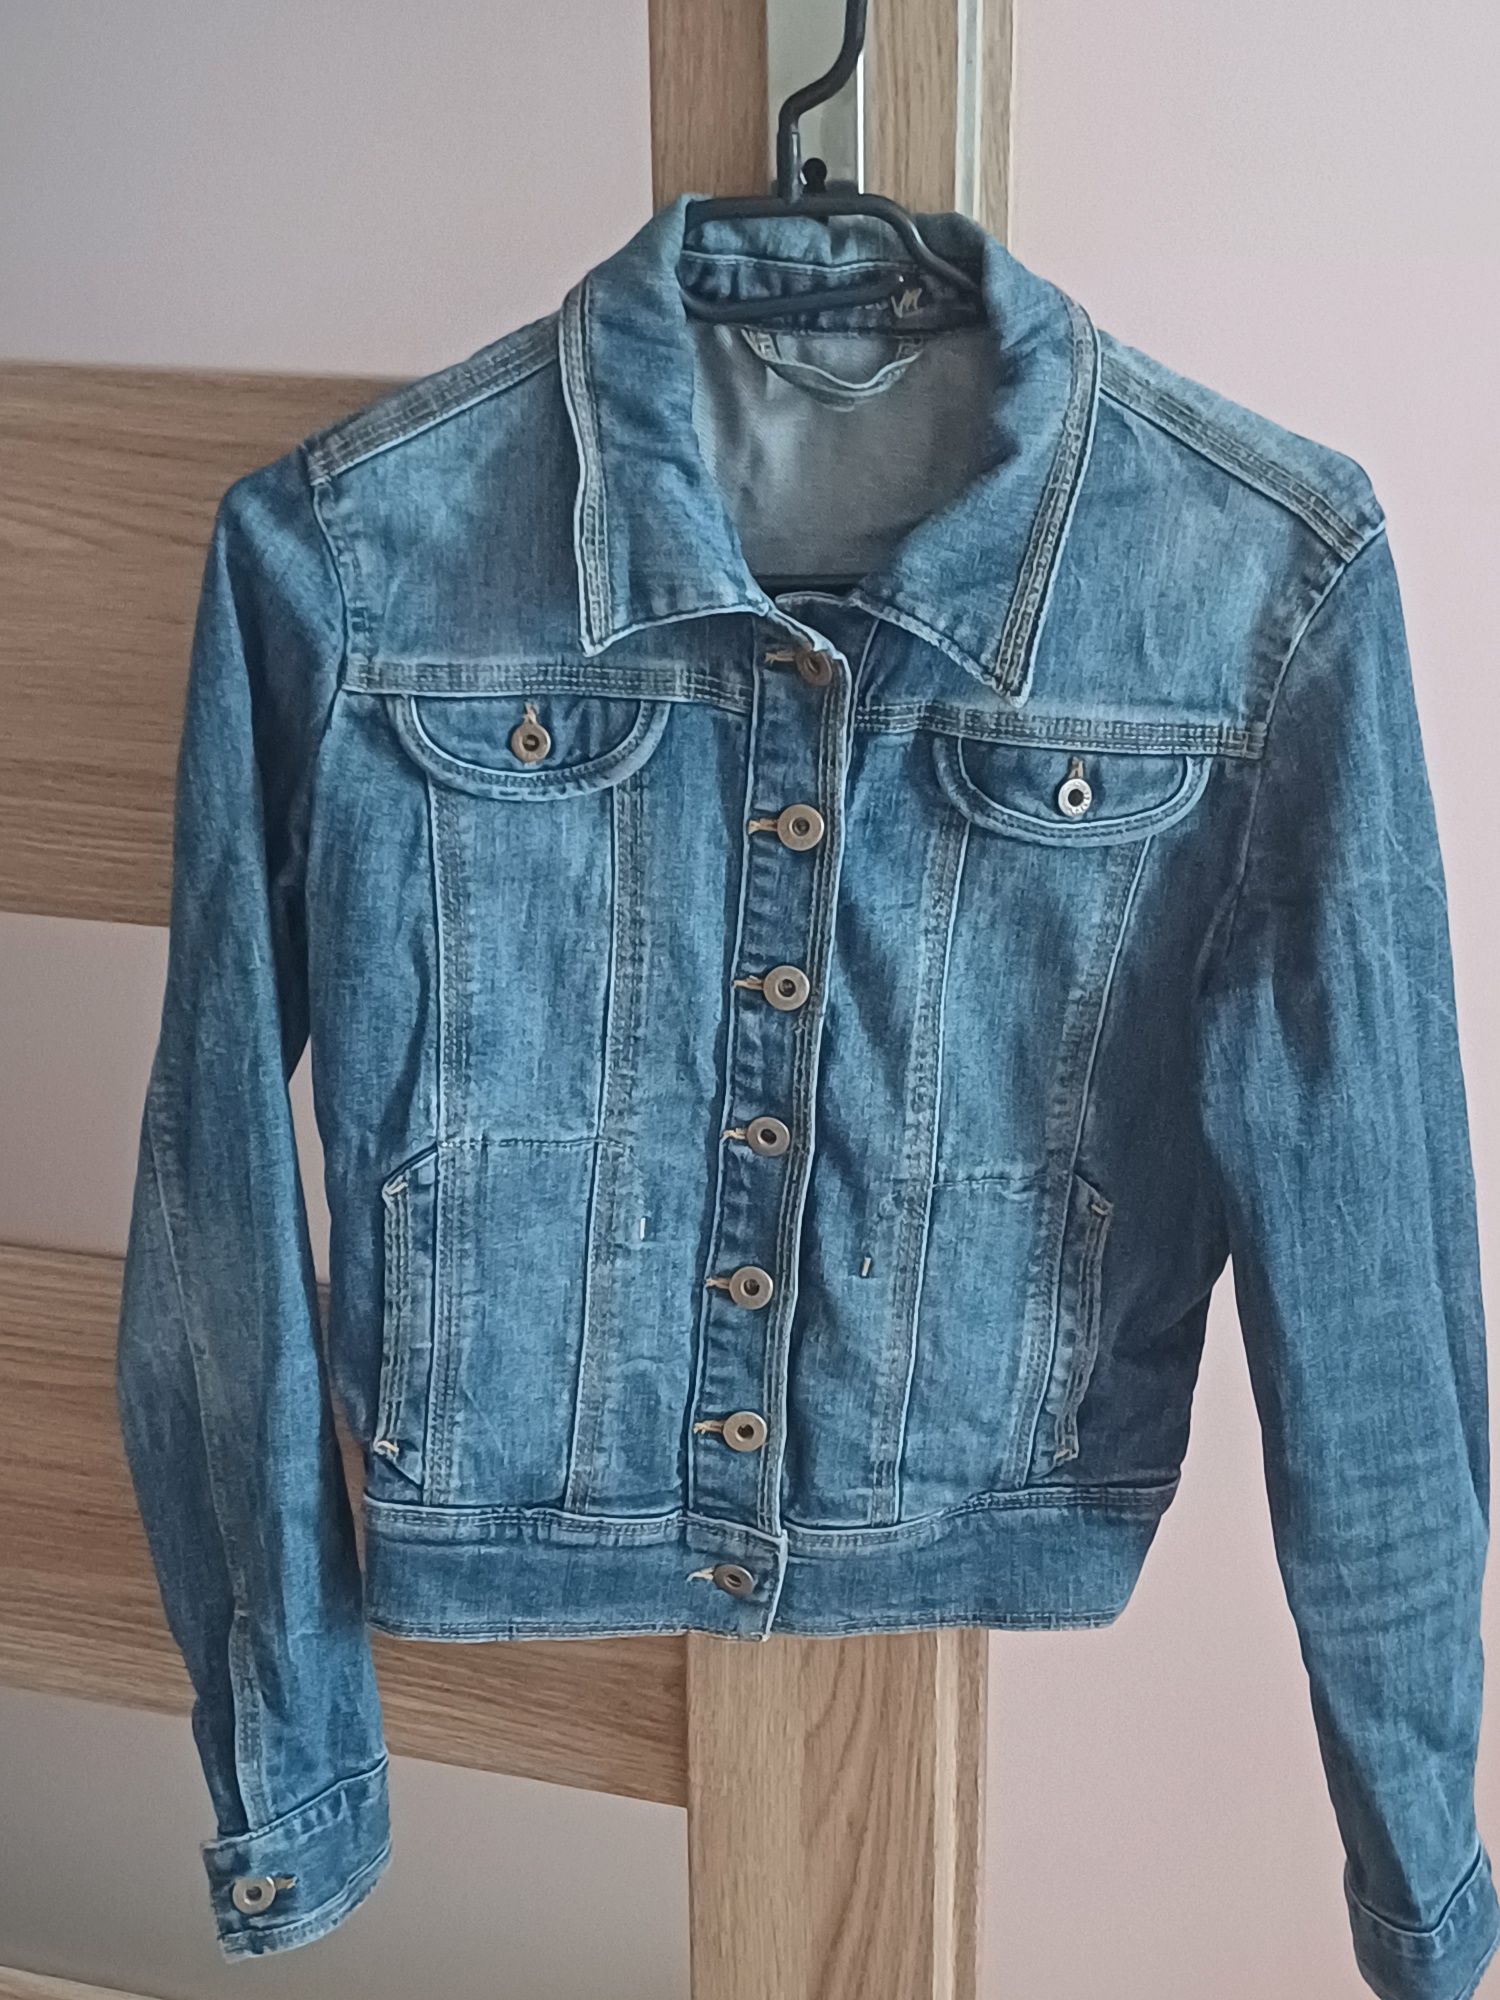 Bluza jeansowa katana rozmiar S -M VERTUS tylko 17 zł